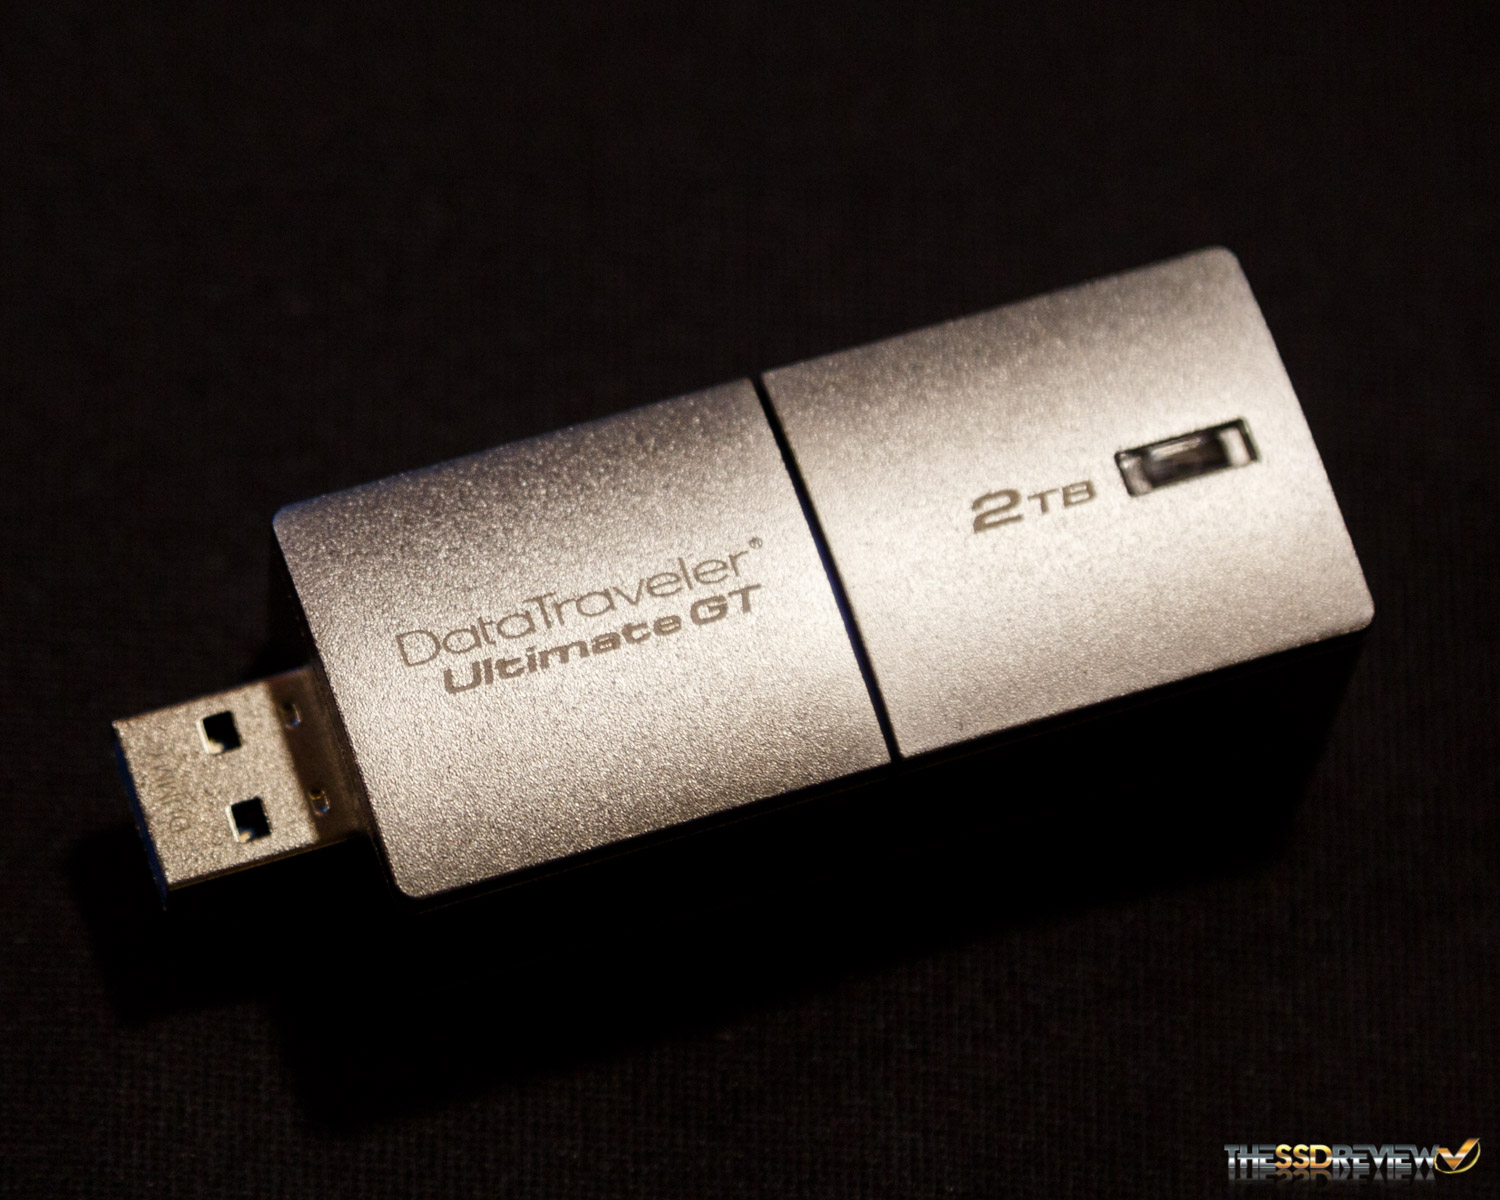 DATATRAVELER Ultimate gt. USB флеш-накопитель. Самая вместительная флешка в мире. Kingston DATATRAVELER Ultimate gt. Максимальный размер флешки